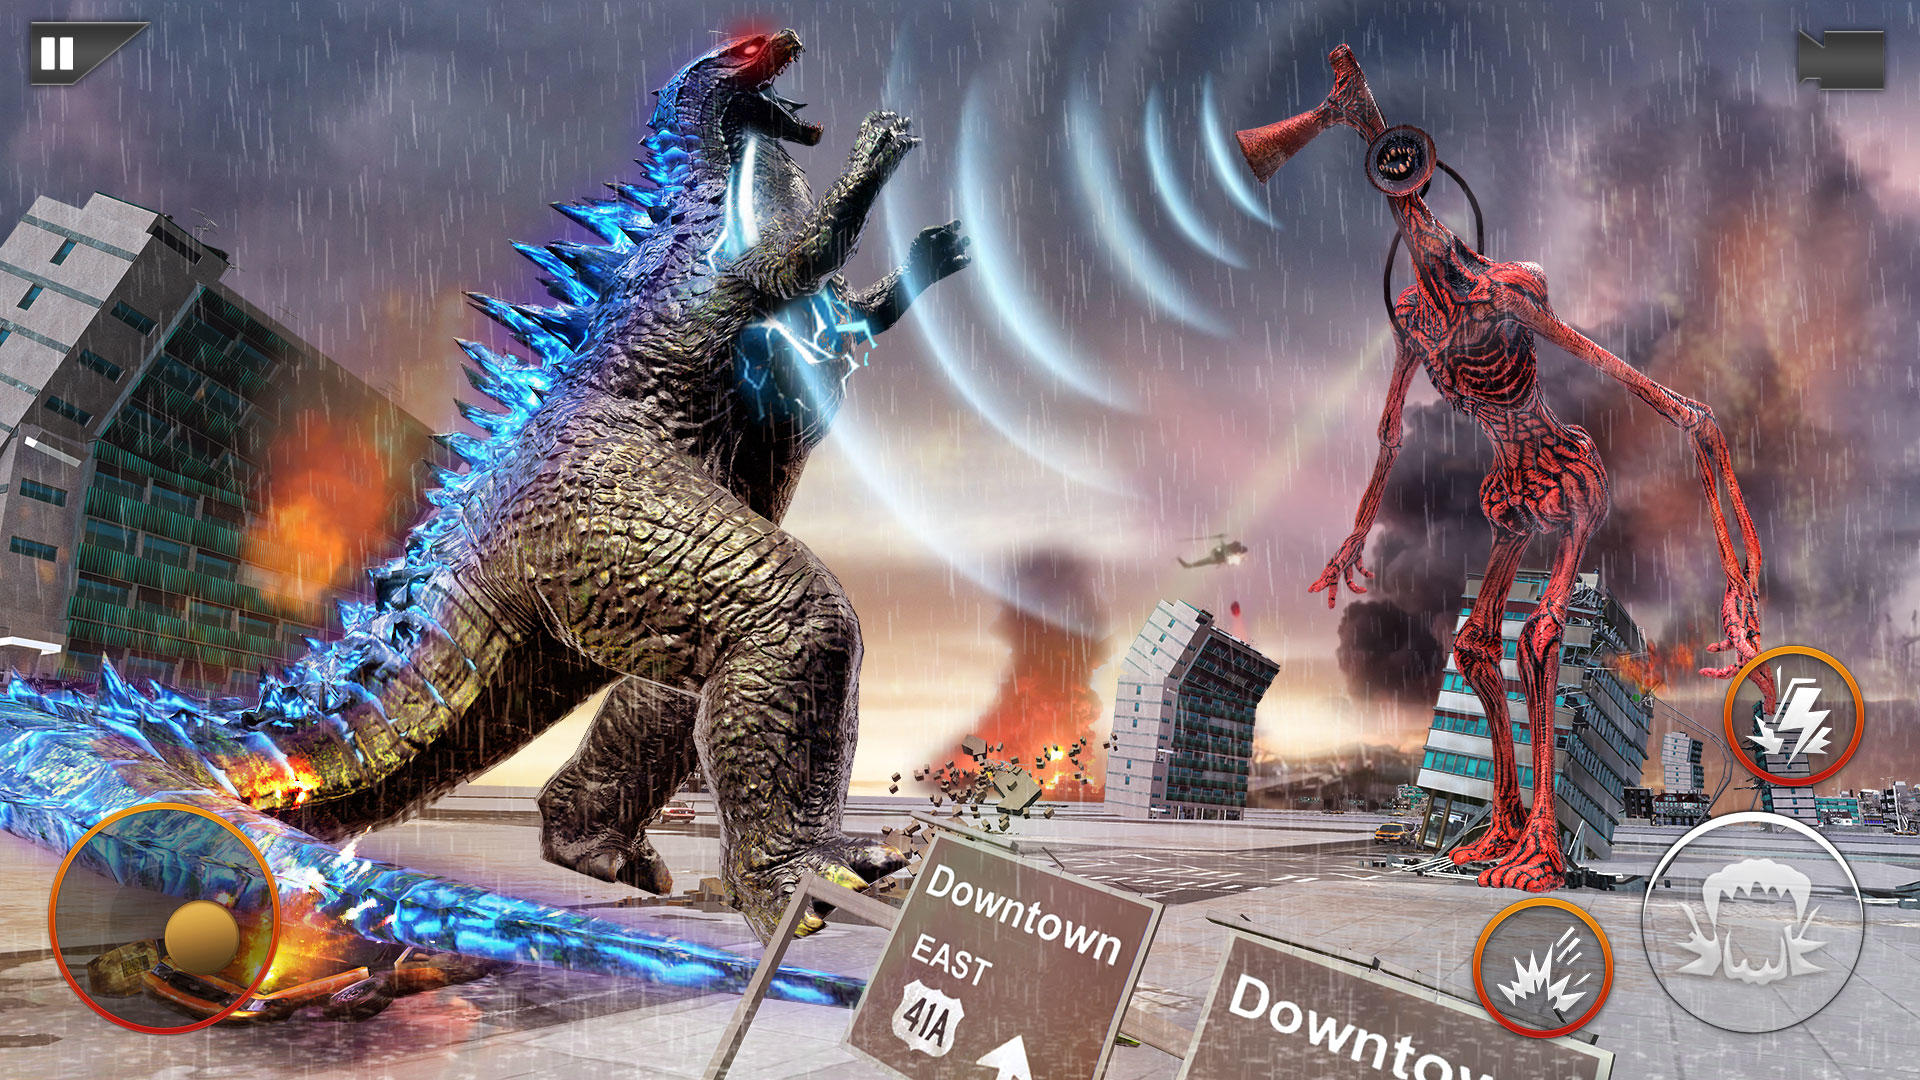 Godzilla vs siren head who would win